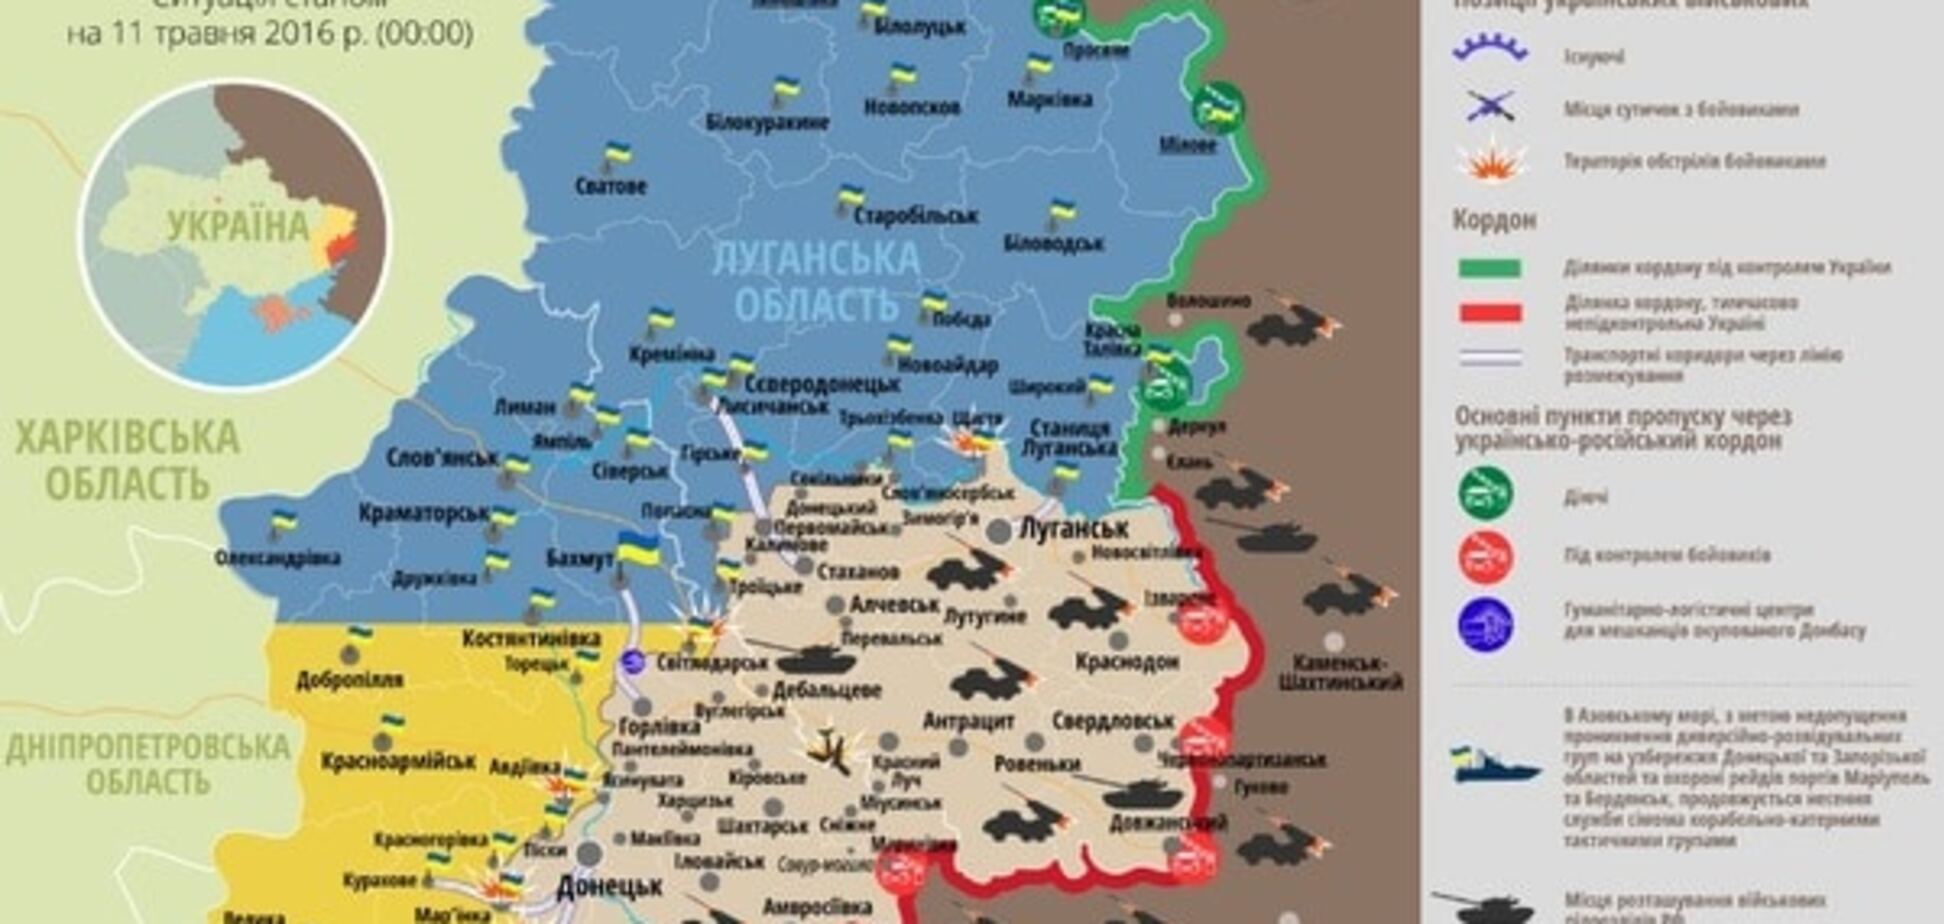 Сили АТО зазнали втрат на Донбасі: опублікована карта - 11 травня 2016